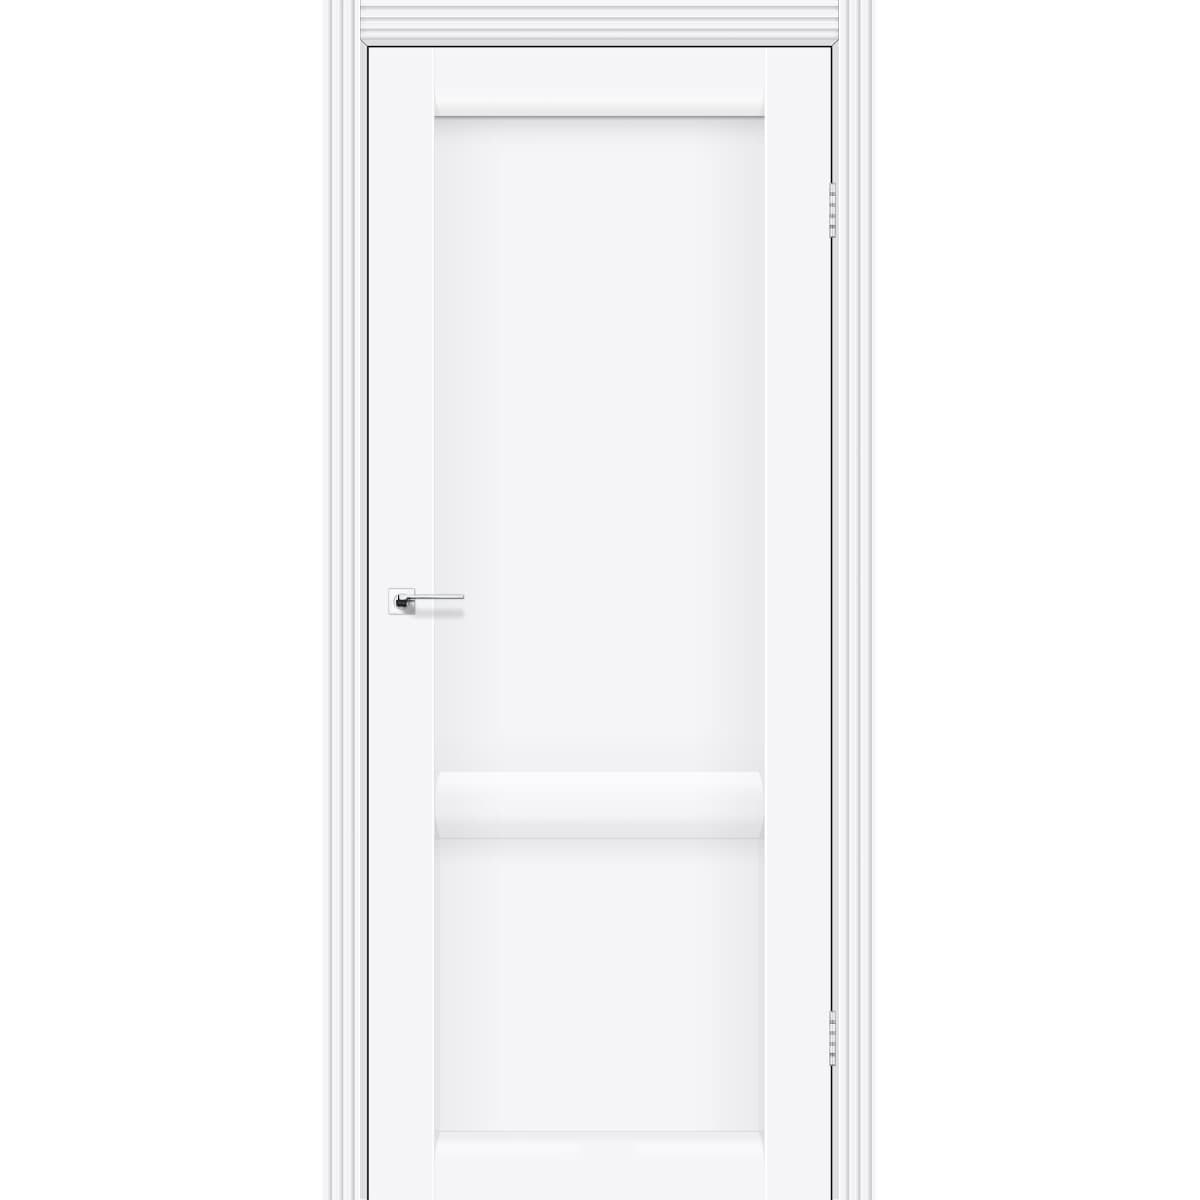 Двери межкомнатные филенчатые белые LAURA LR-02 белый мат